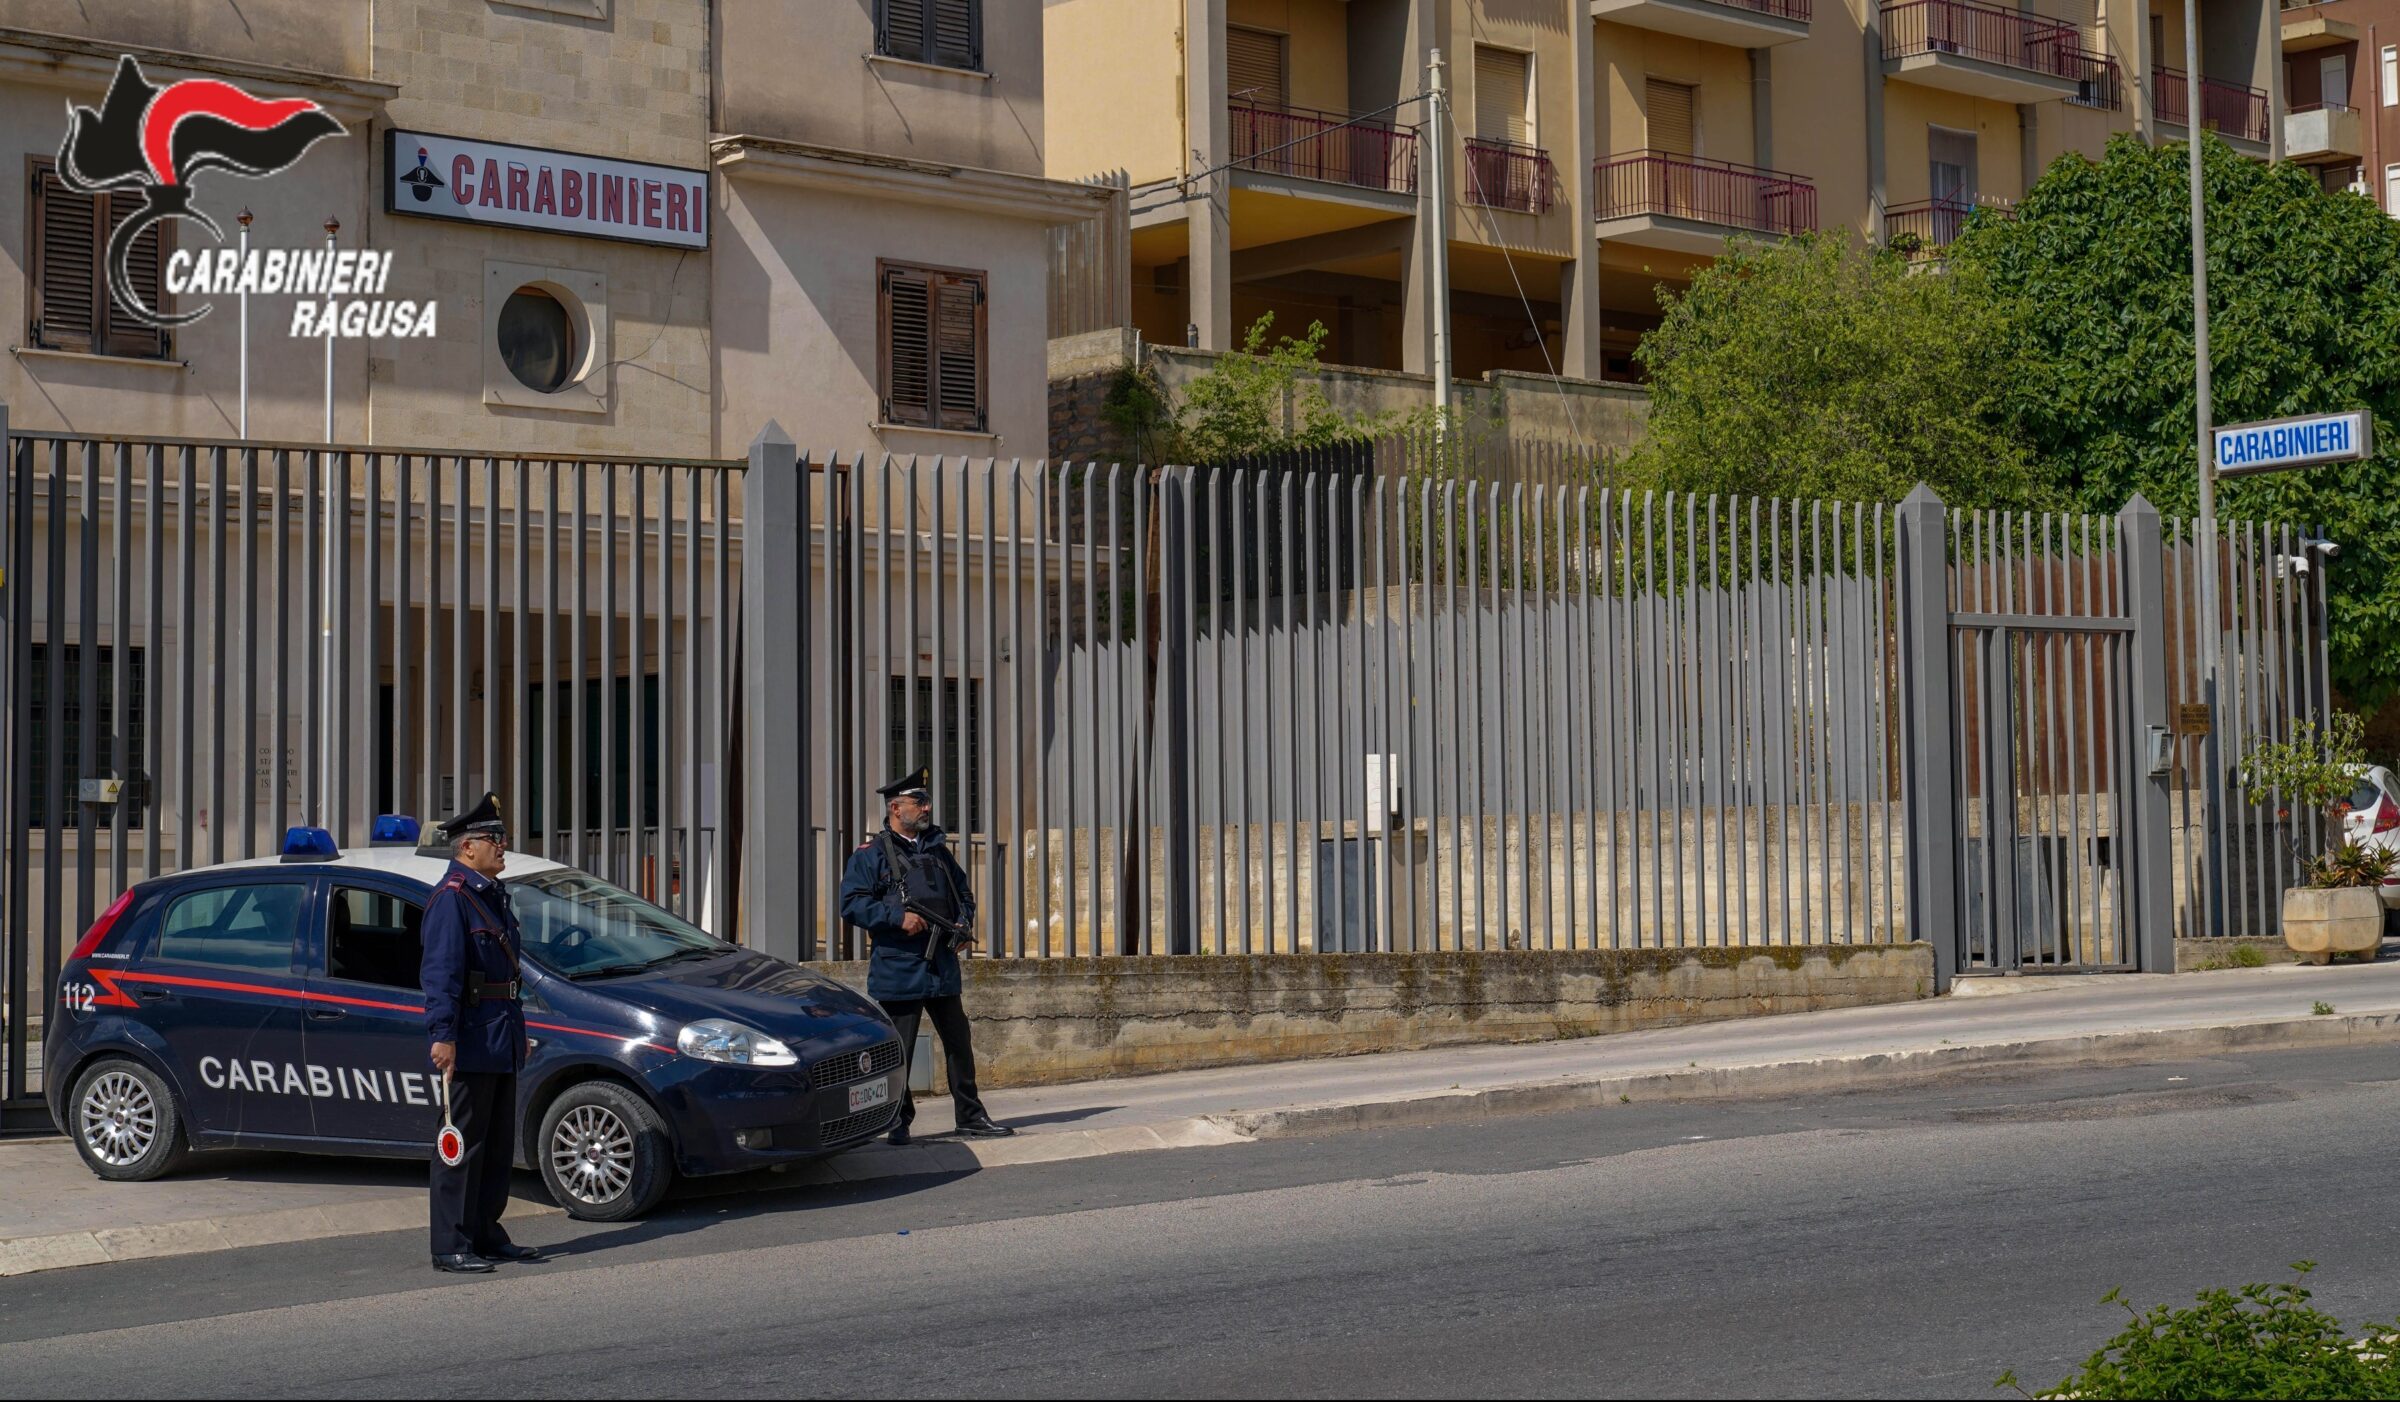 Ubriaco minaccia la moglie nonostante i Carabinieri, arrestato un 55enne del Ragusano